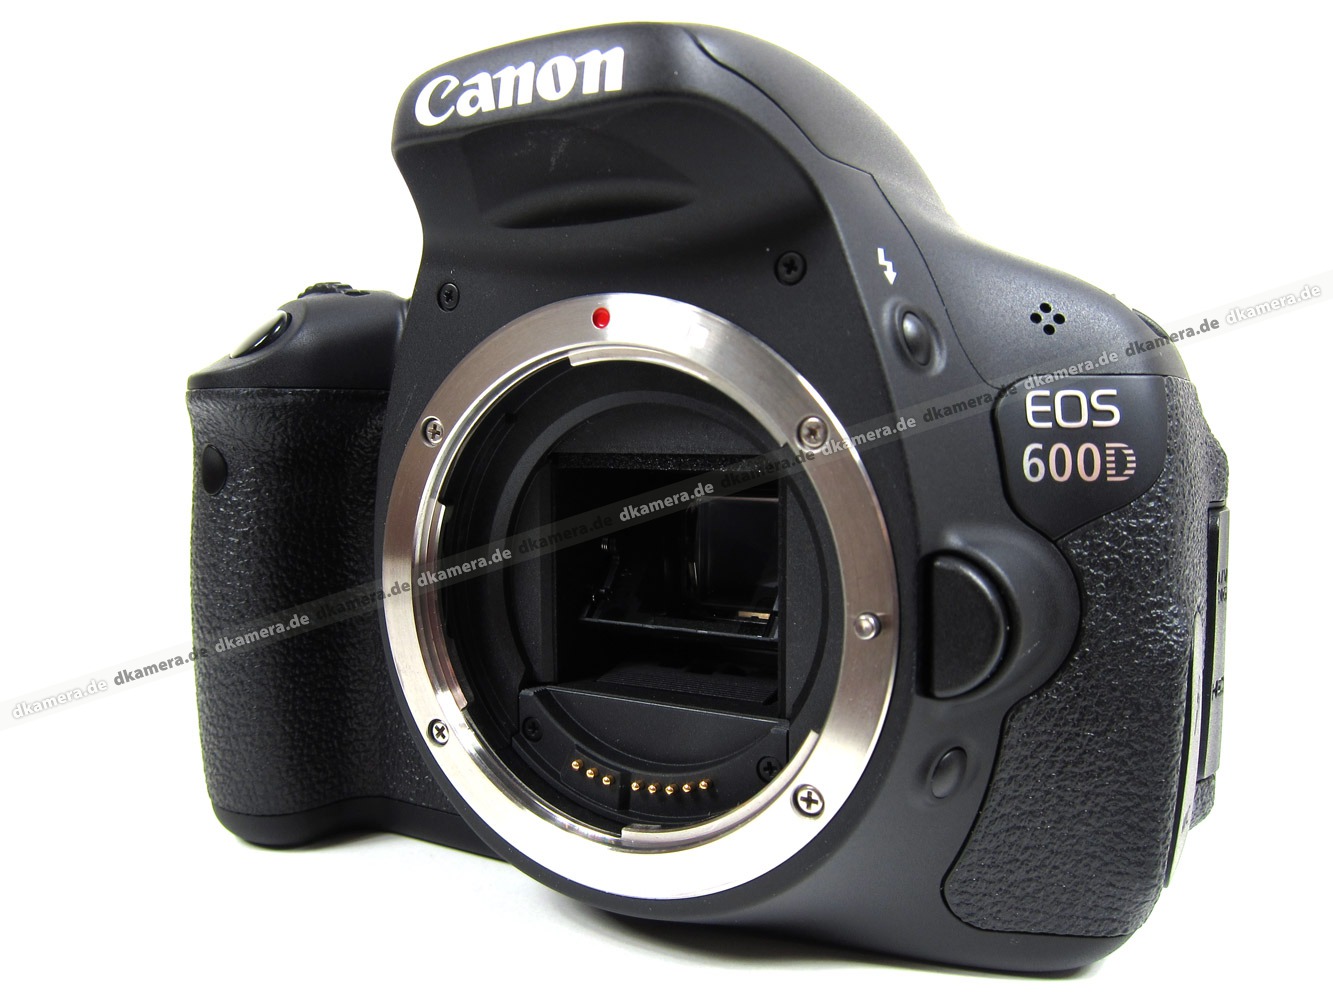 die kamera | testbericht zur canon eos 600d | testberichte | dkamera